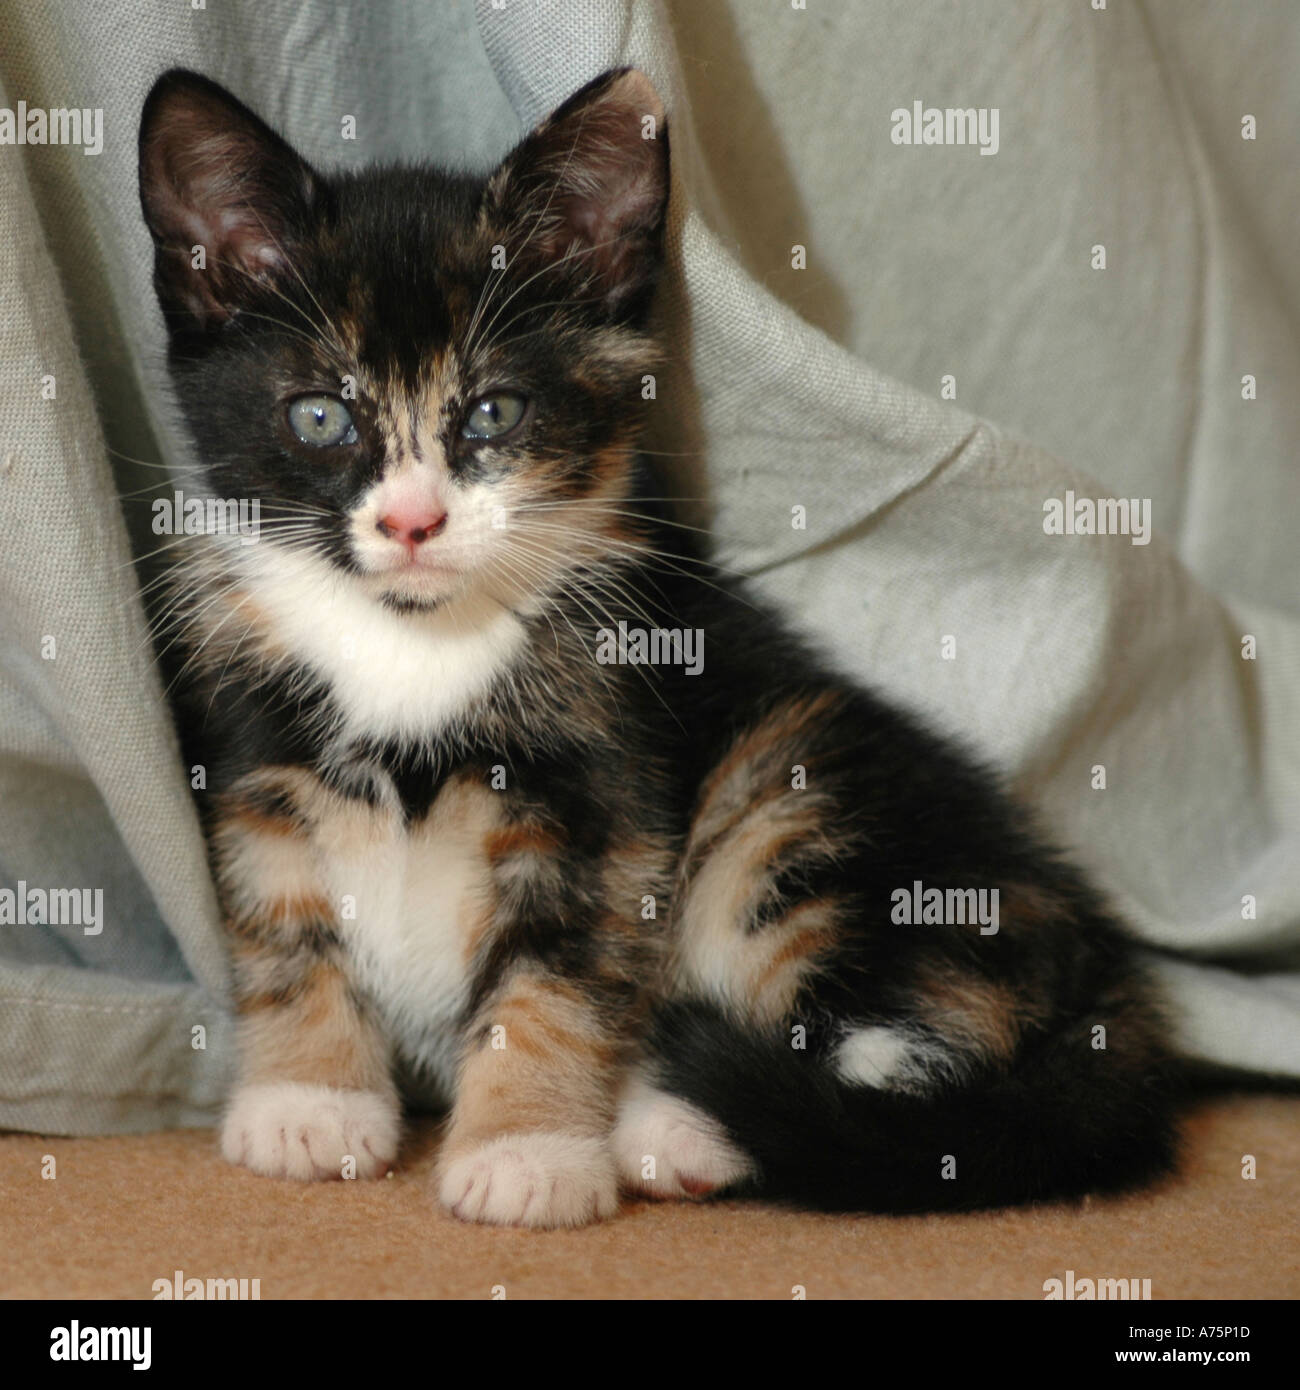 Kitten aged 7 weeks Stock Photo